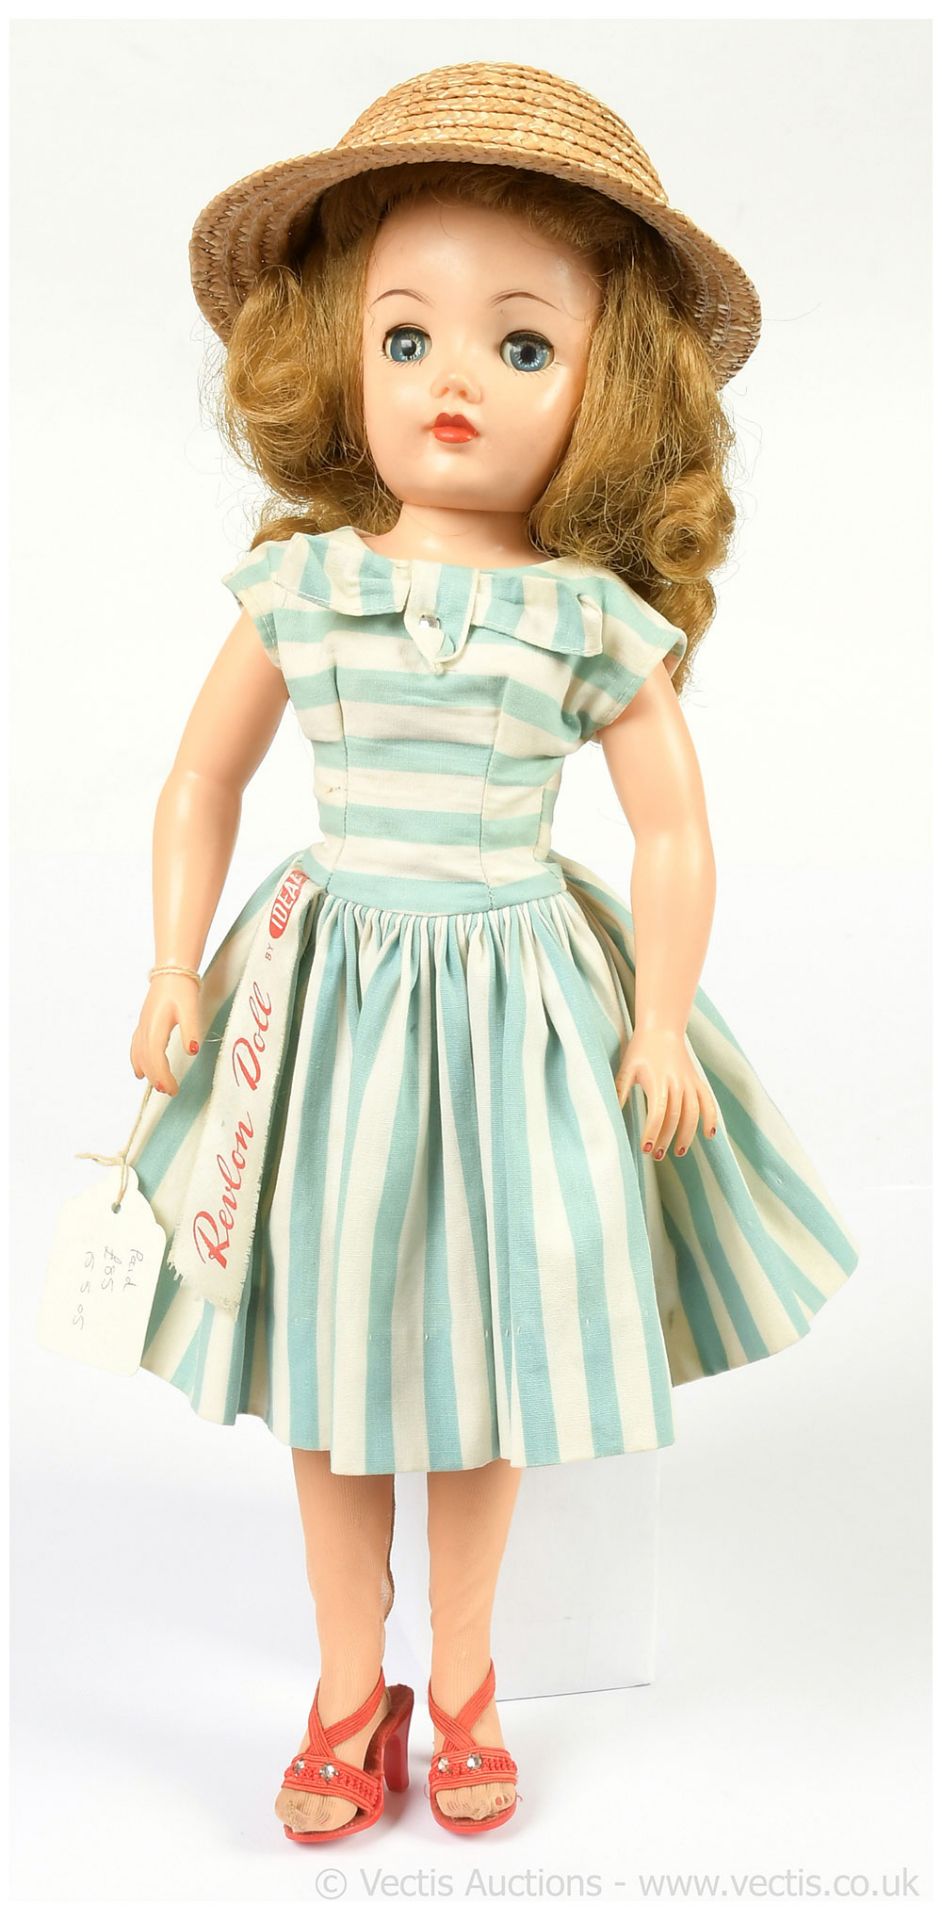 Ideal Miss Revlon vintage vinyl teenage doll